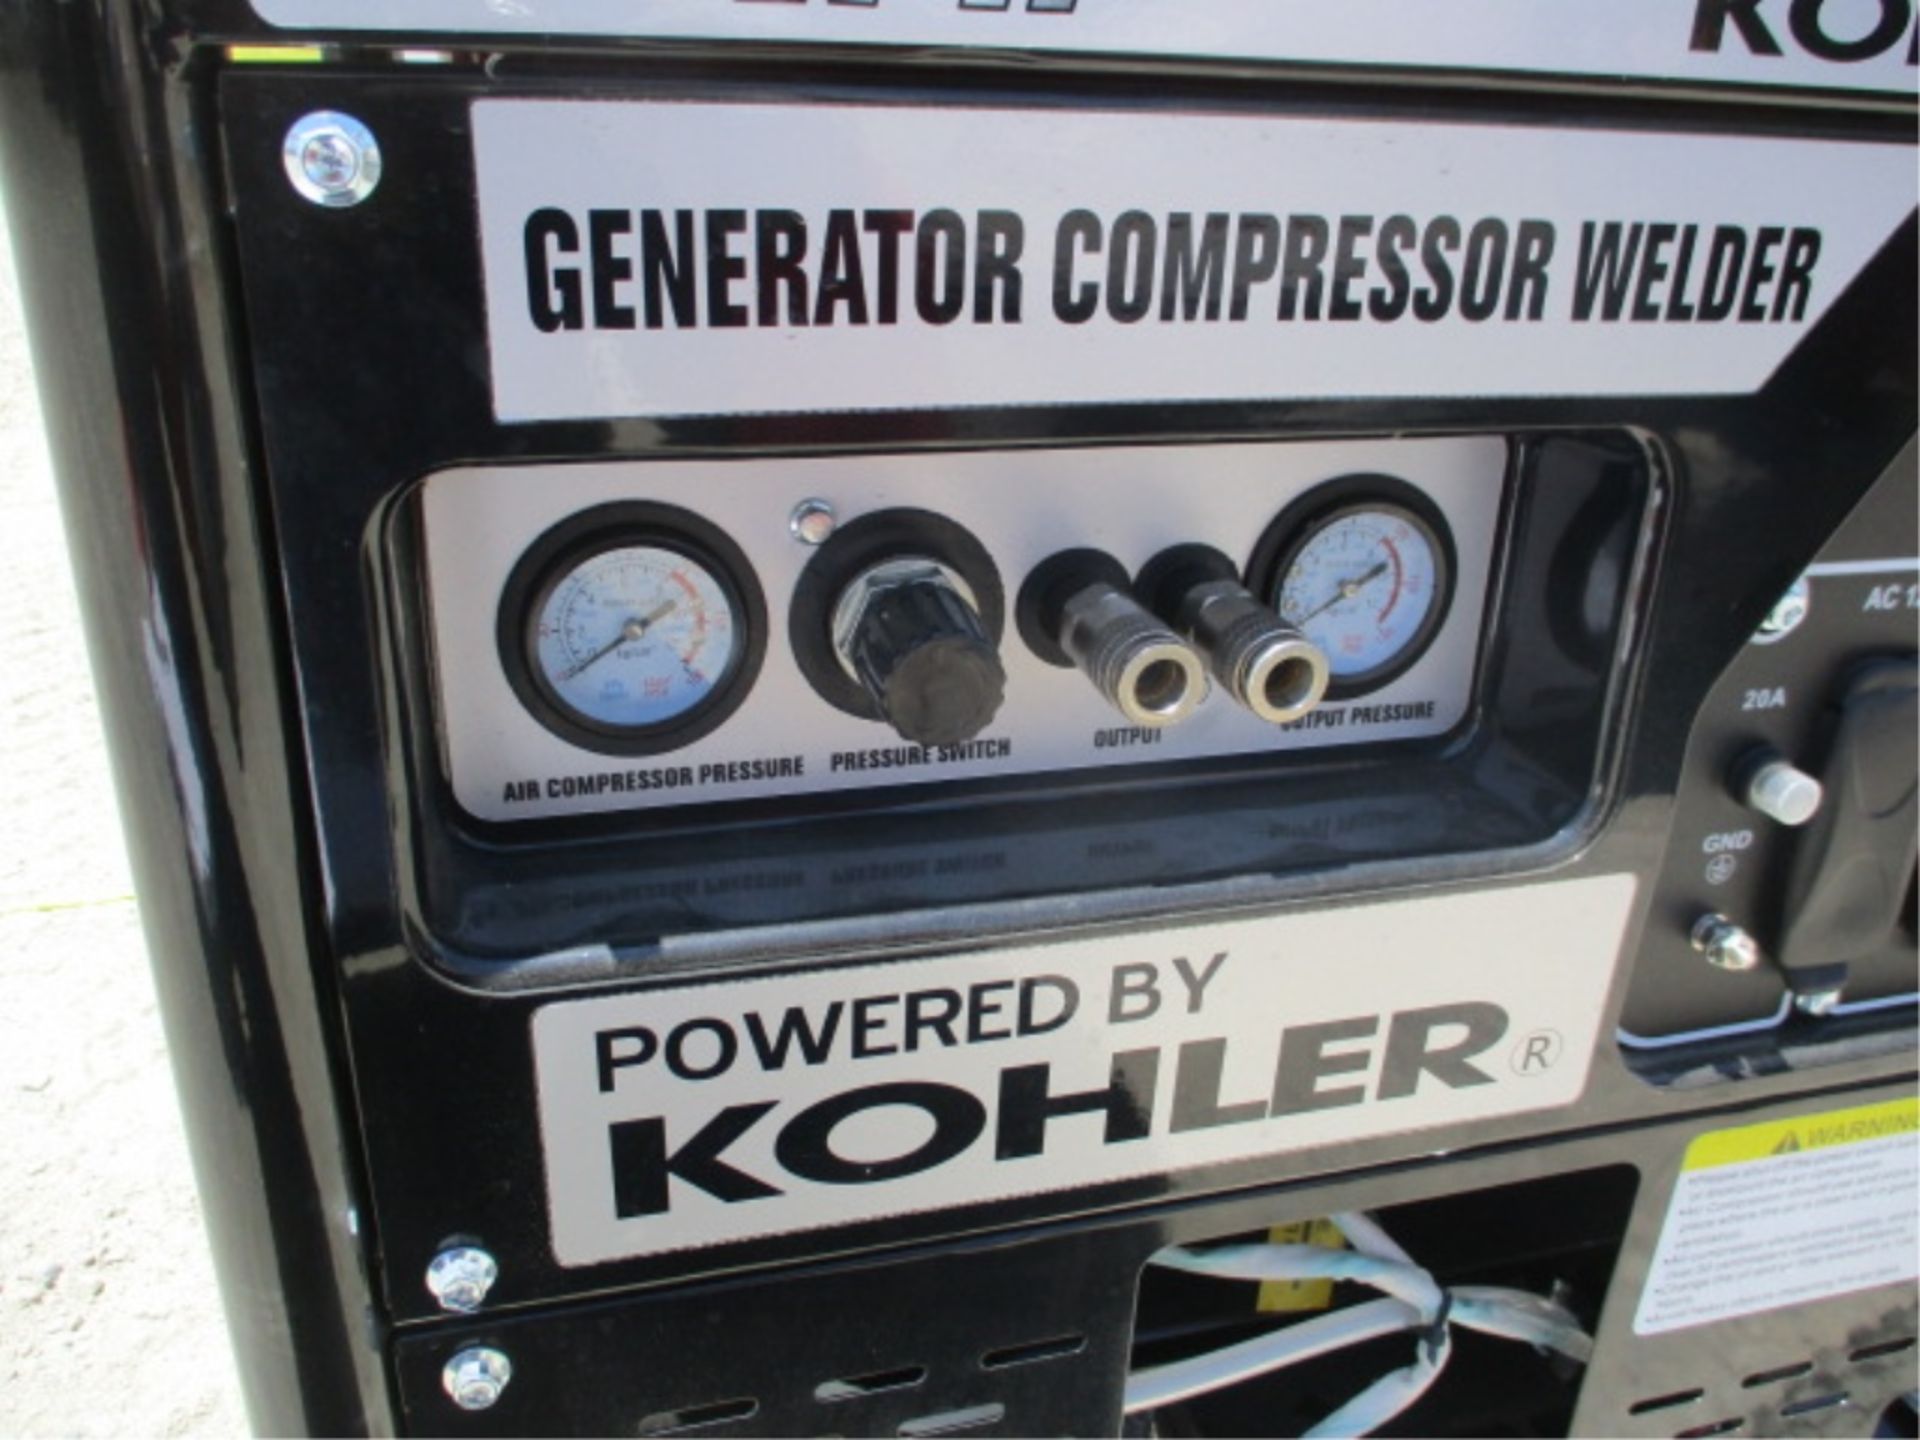 Kohler Command Pro III 9500 Generator Compressor, Welder, Gas Powered, S/N: 4919803918 - Image 20 of 28